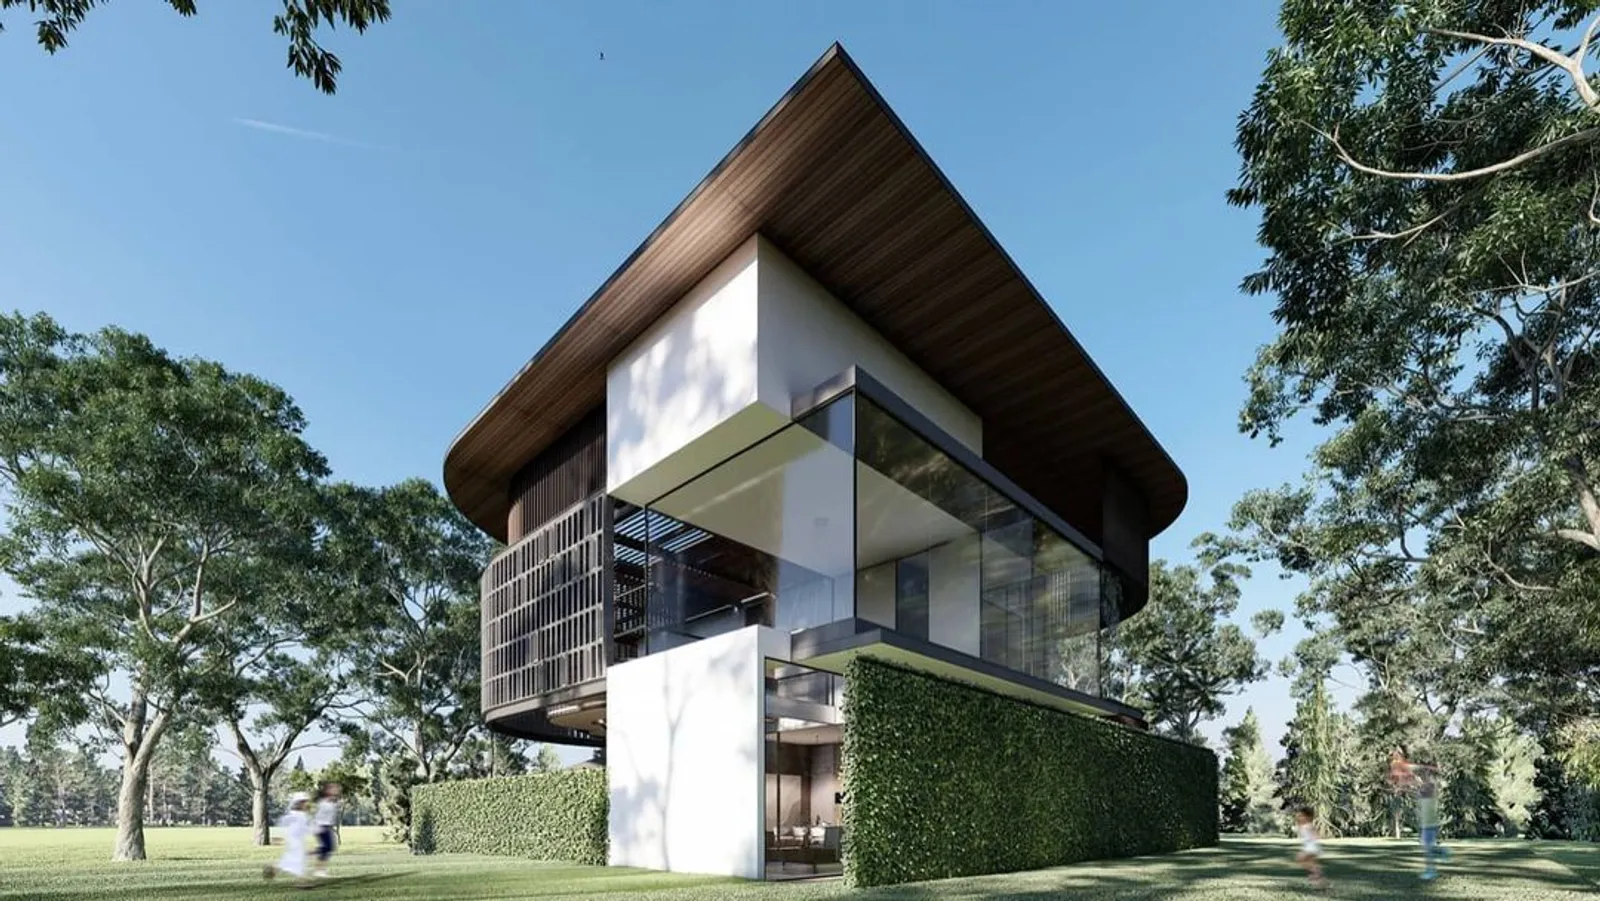 Mewah Seperti Mall, Ini Potret Rumah Baru Ayu Ting Ting di Jakarta